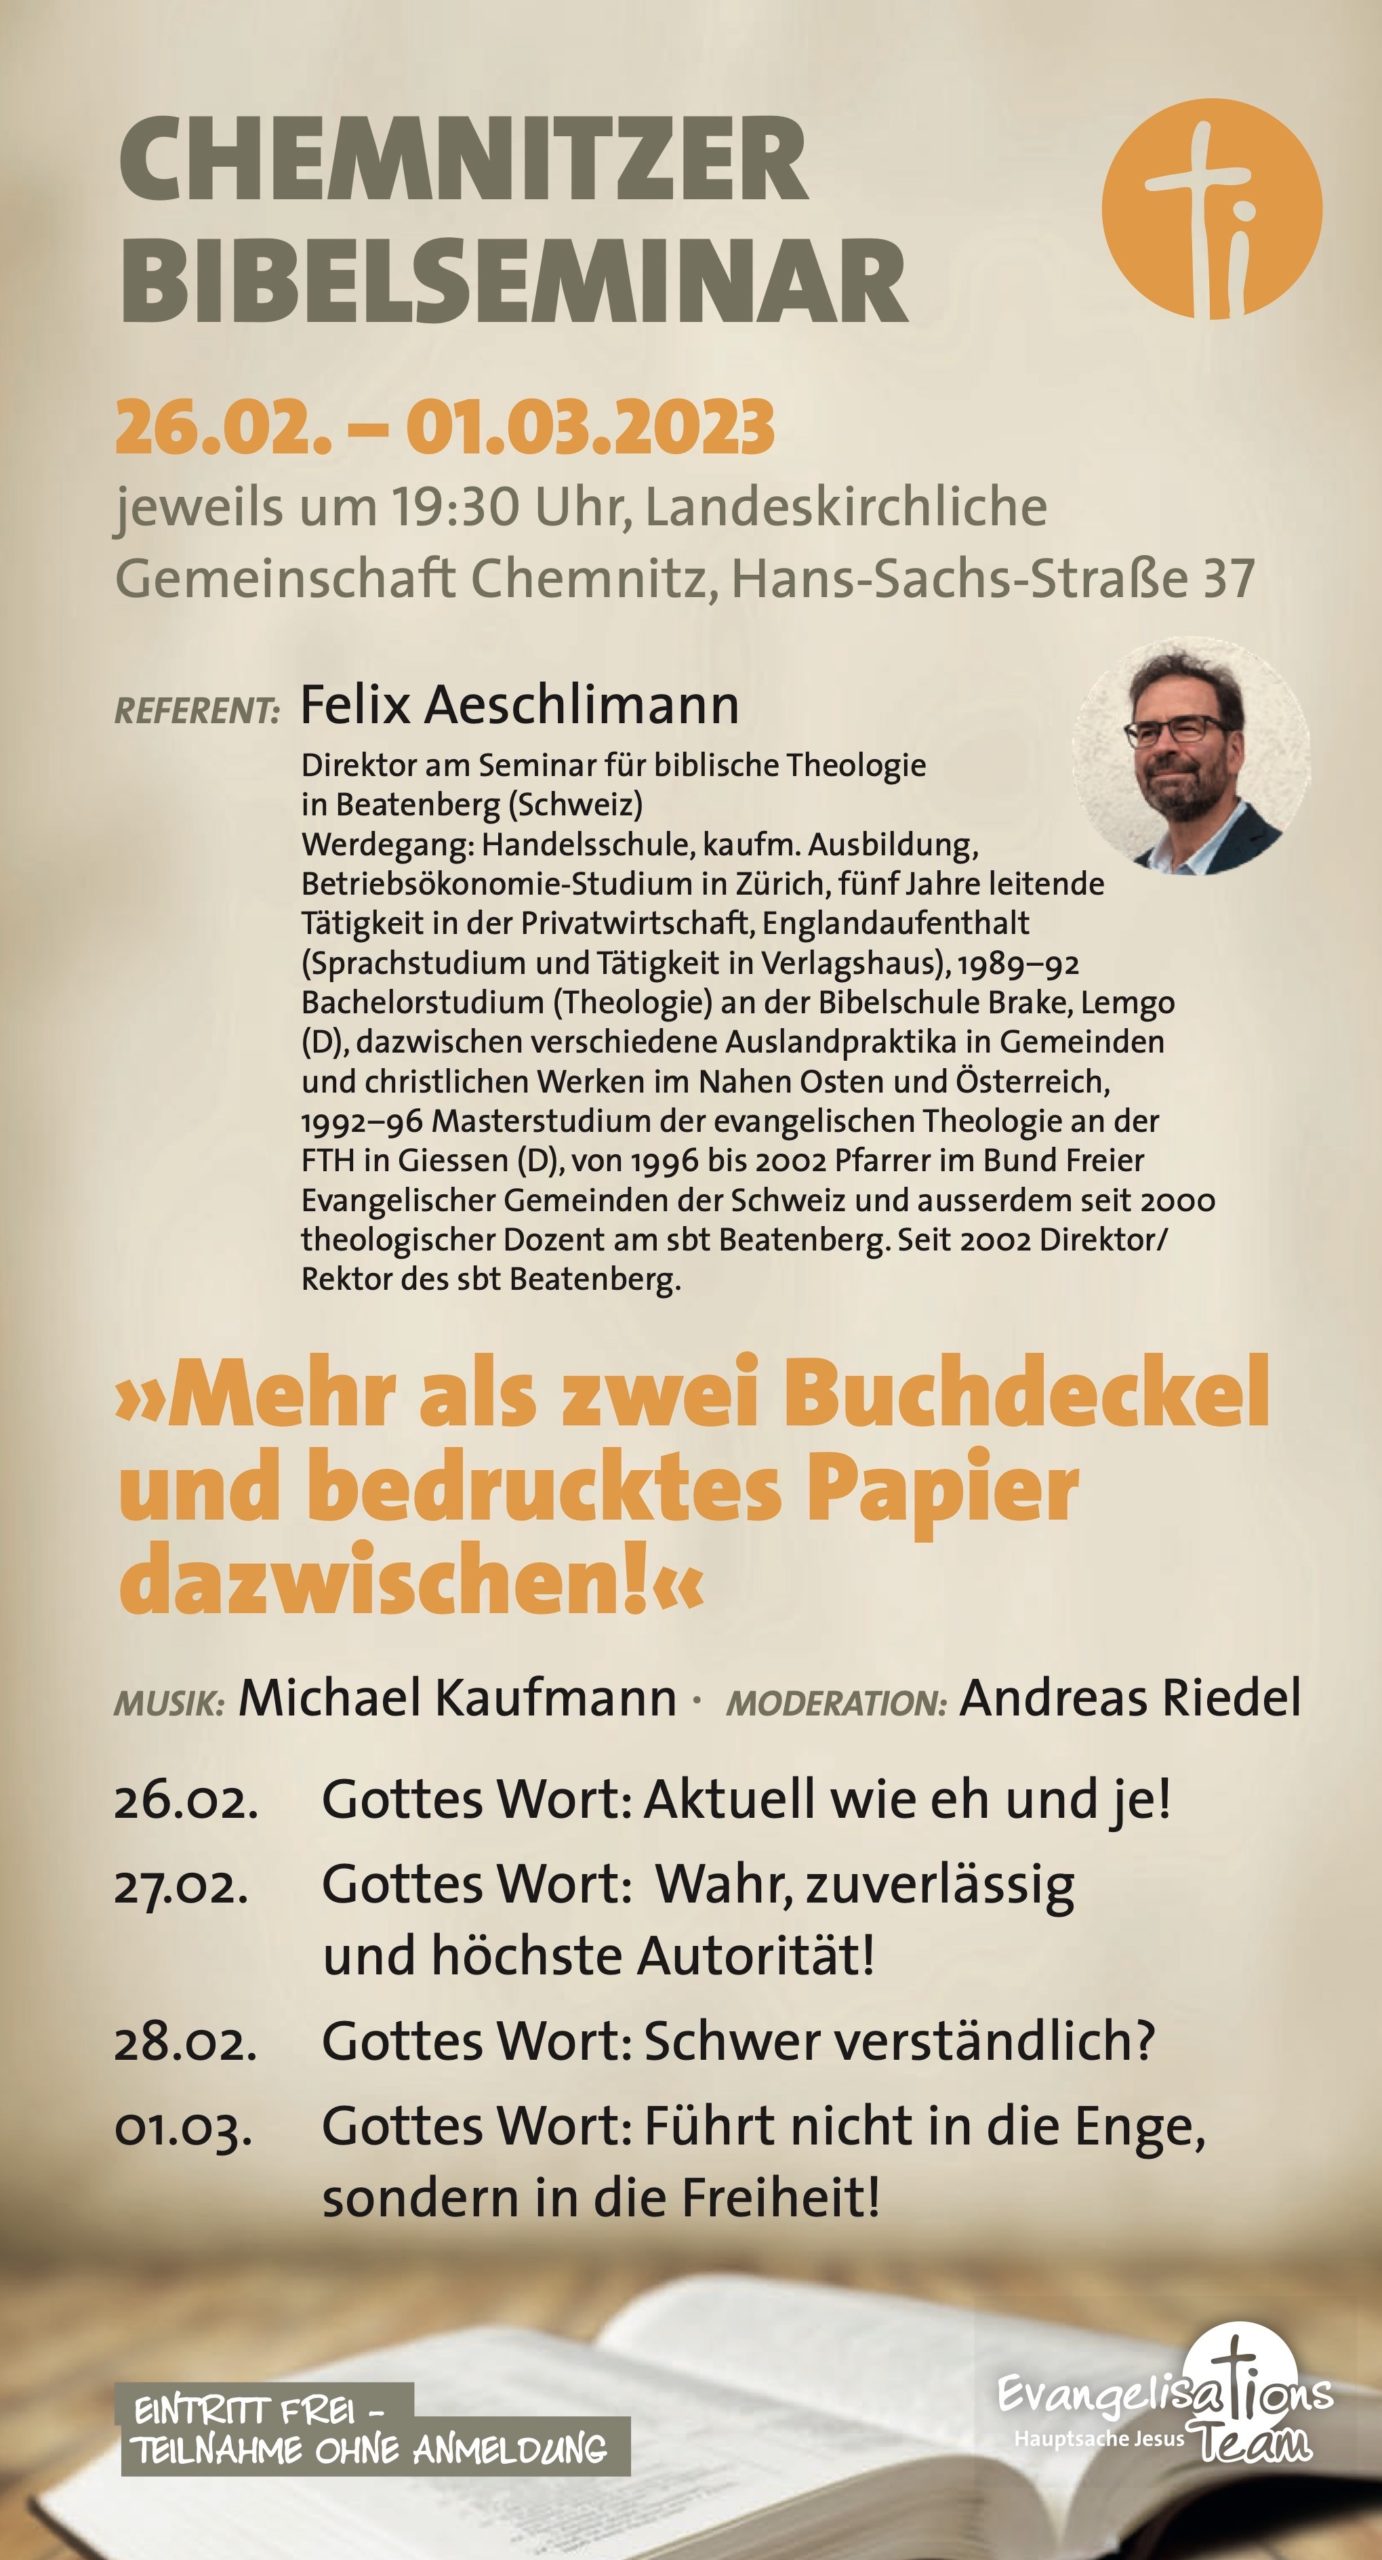 Flyer Chemnitzer Bibelseminar vom 26.02. bis 01.03.2023